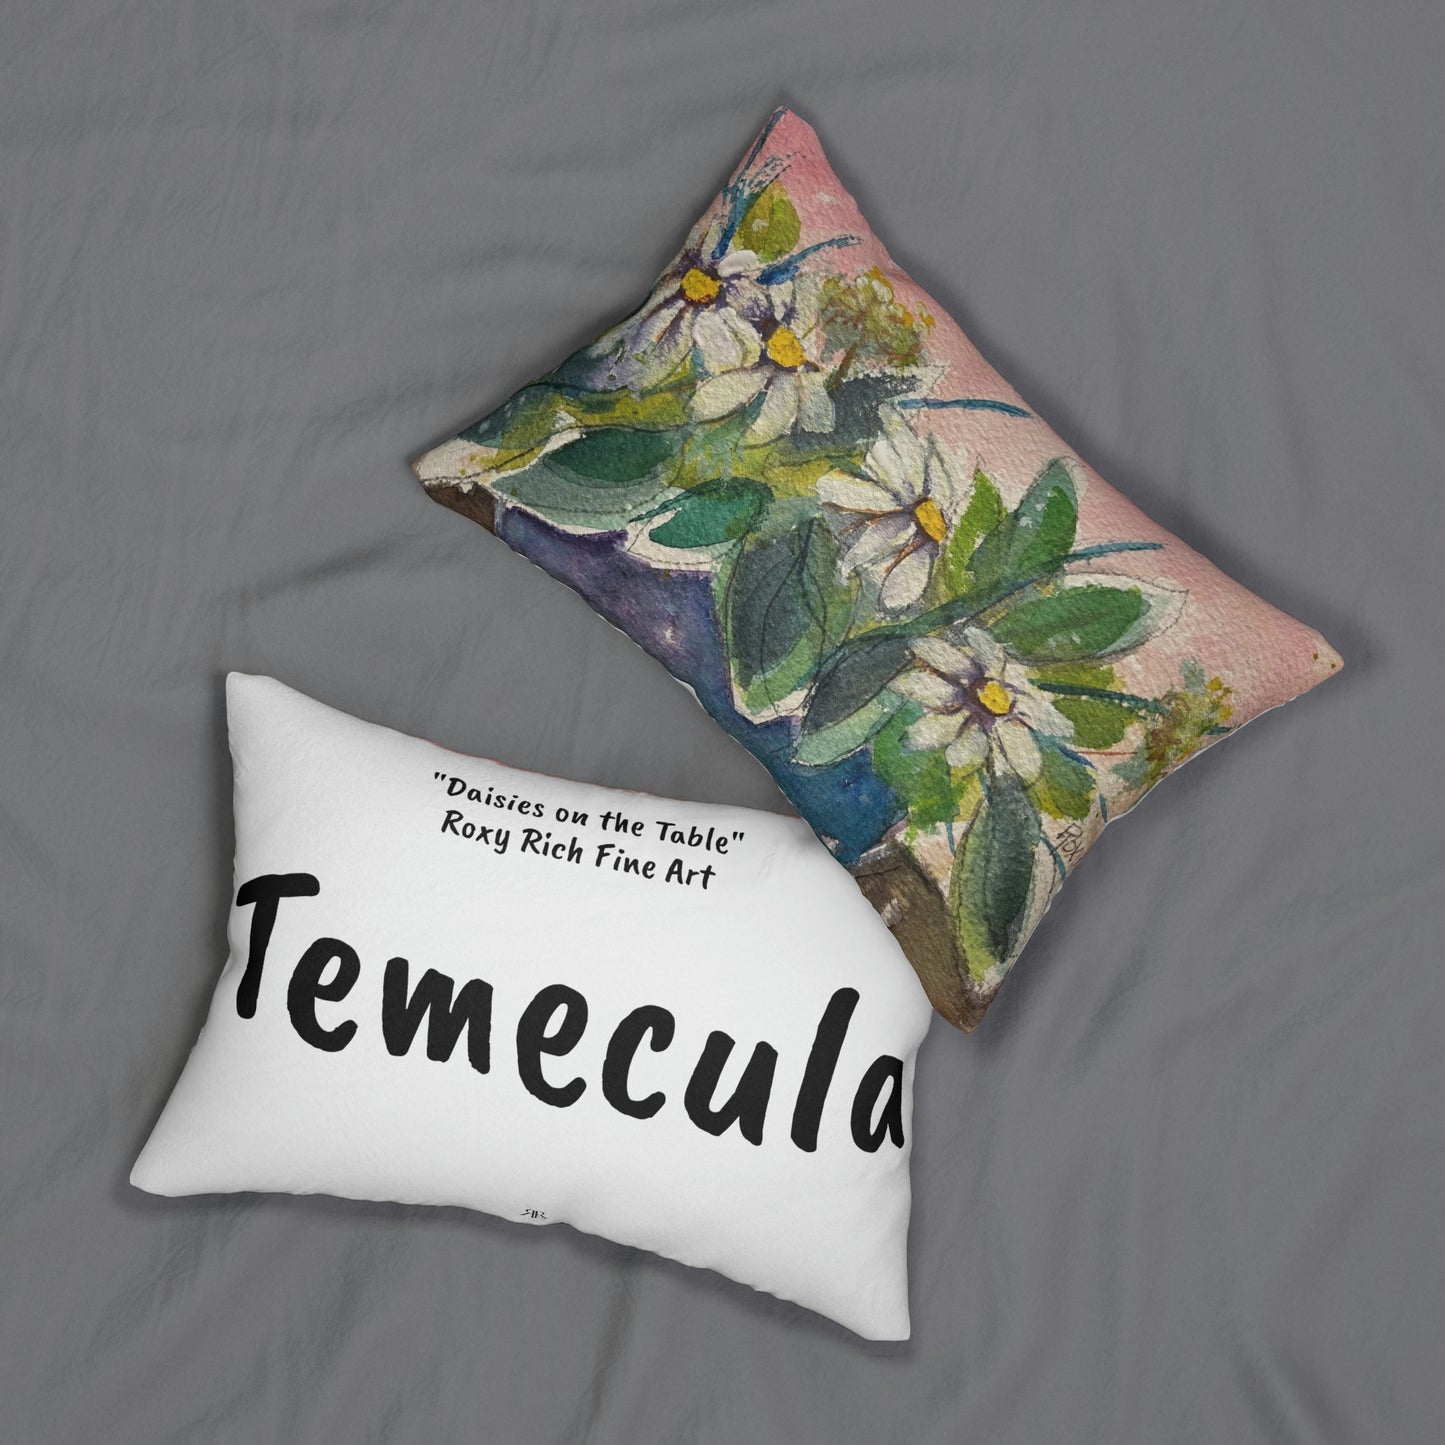 Oreiller lombaire Temecula avec « Marguerites sur la table » Roxy Rich Fine Art et « Temecula »